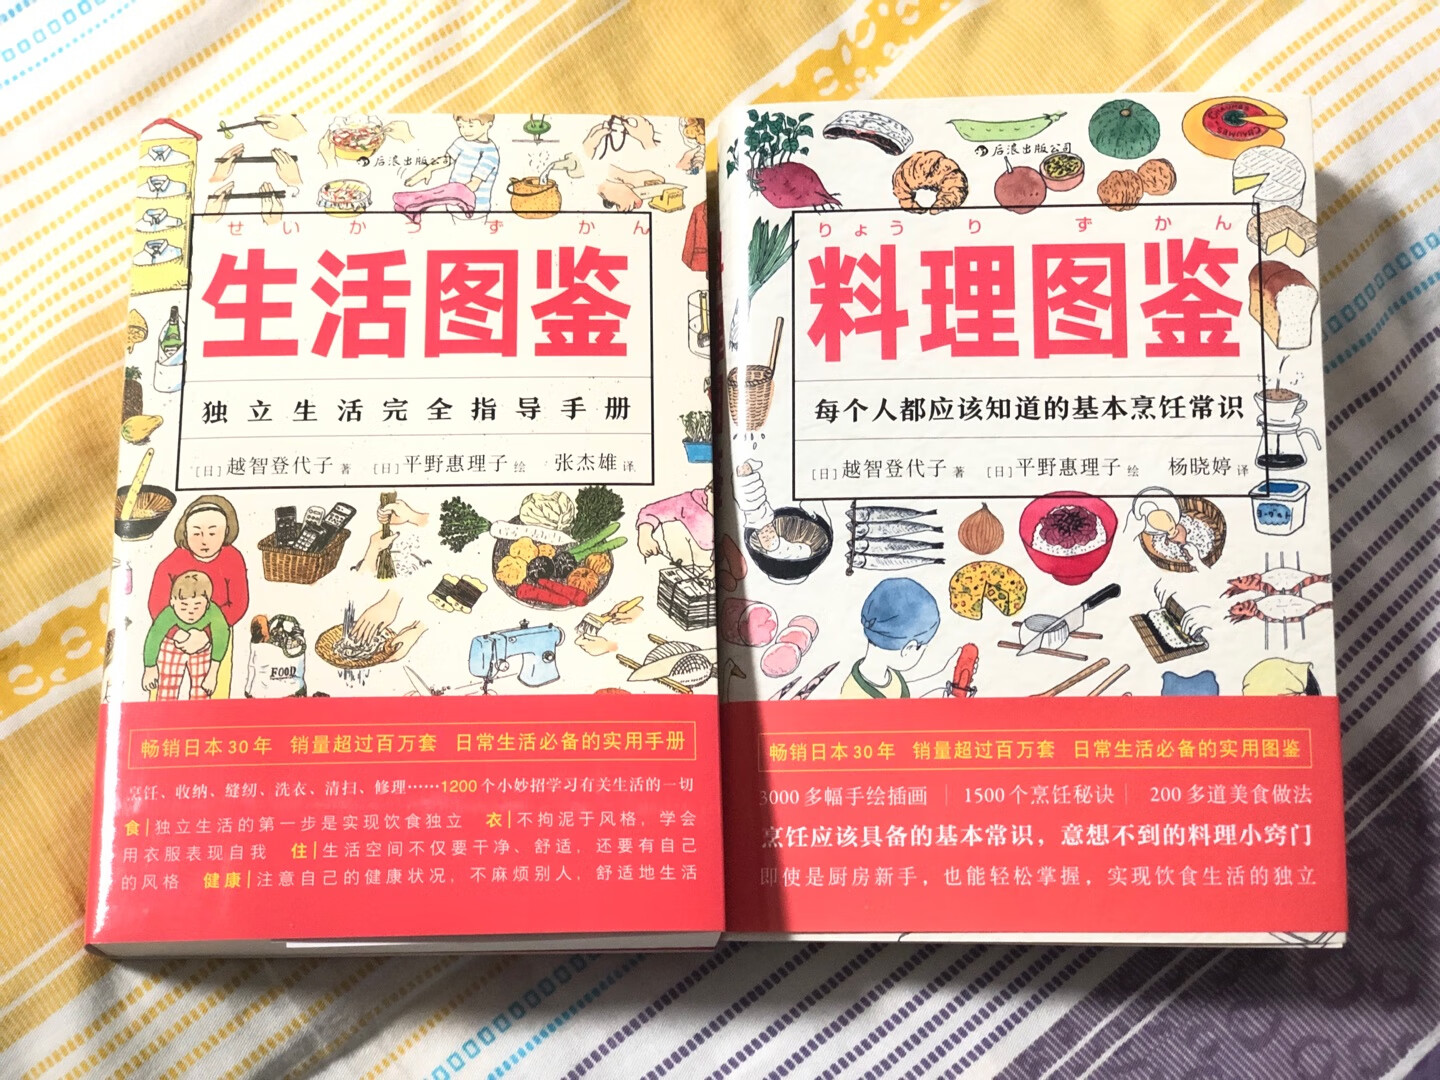 同时购买了《生活图鉴》和《料理图鉴》，都是很居家而且插图精美的生活技术用书，日本人在这方面确实很厉害，值得借鉴学习，读书日的活动还不错，满意～很有意思的小书，有些东西比较日本本地，大多数内容还是具有普适价值的